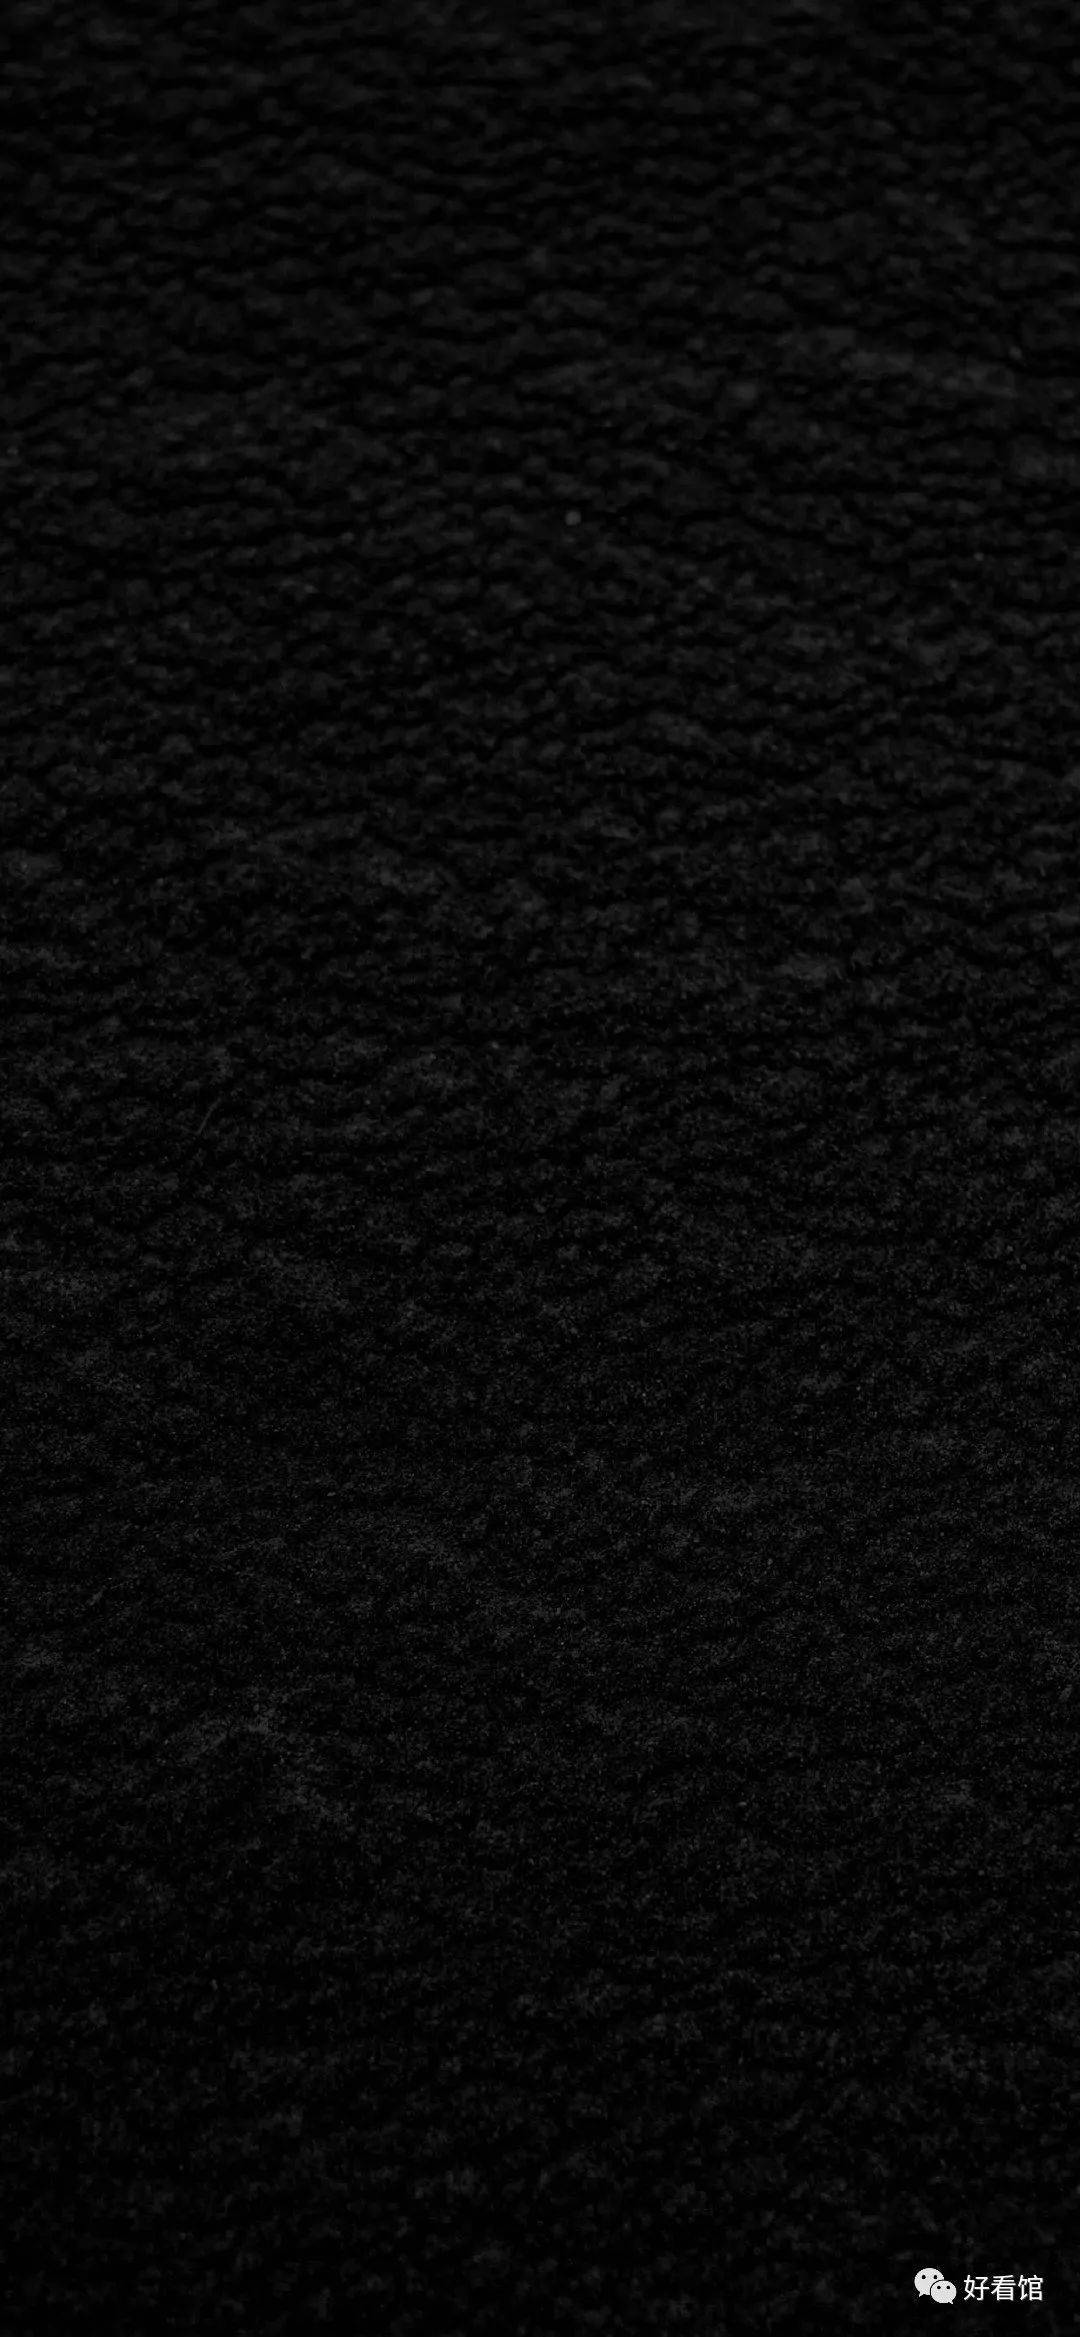 黑色系列壁纸#高清黑色背景图片#纯黑色手机壁纸【第30期】